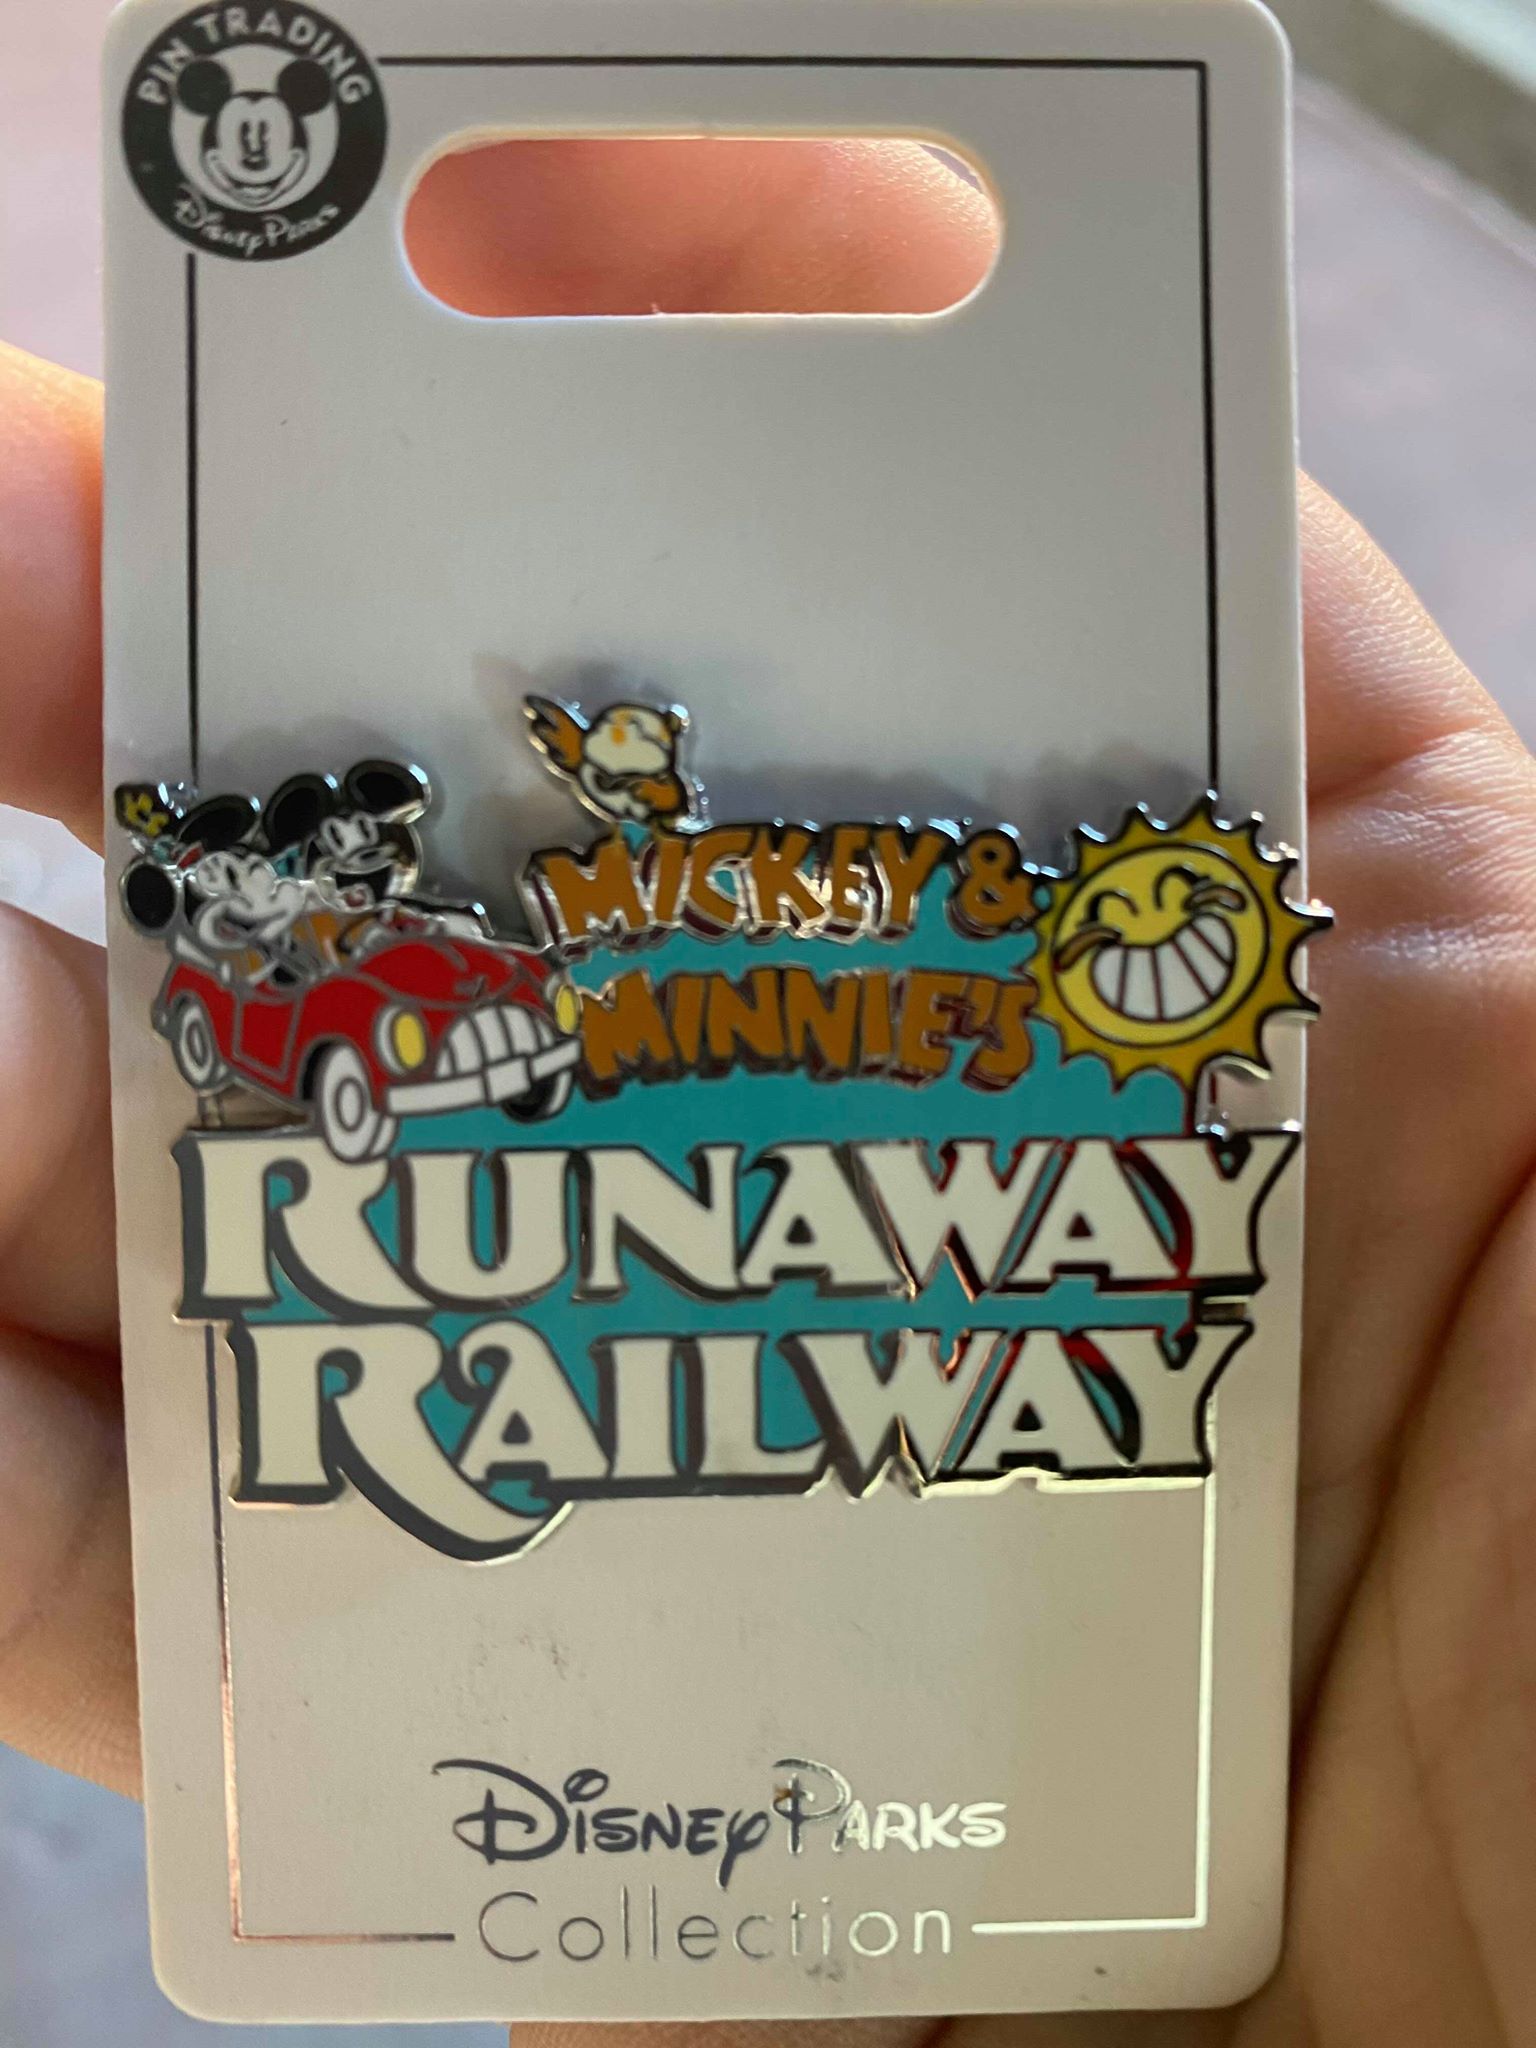 Runaway Railway